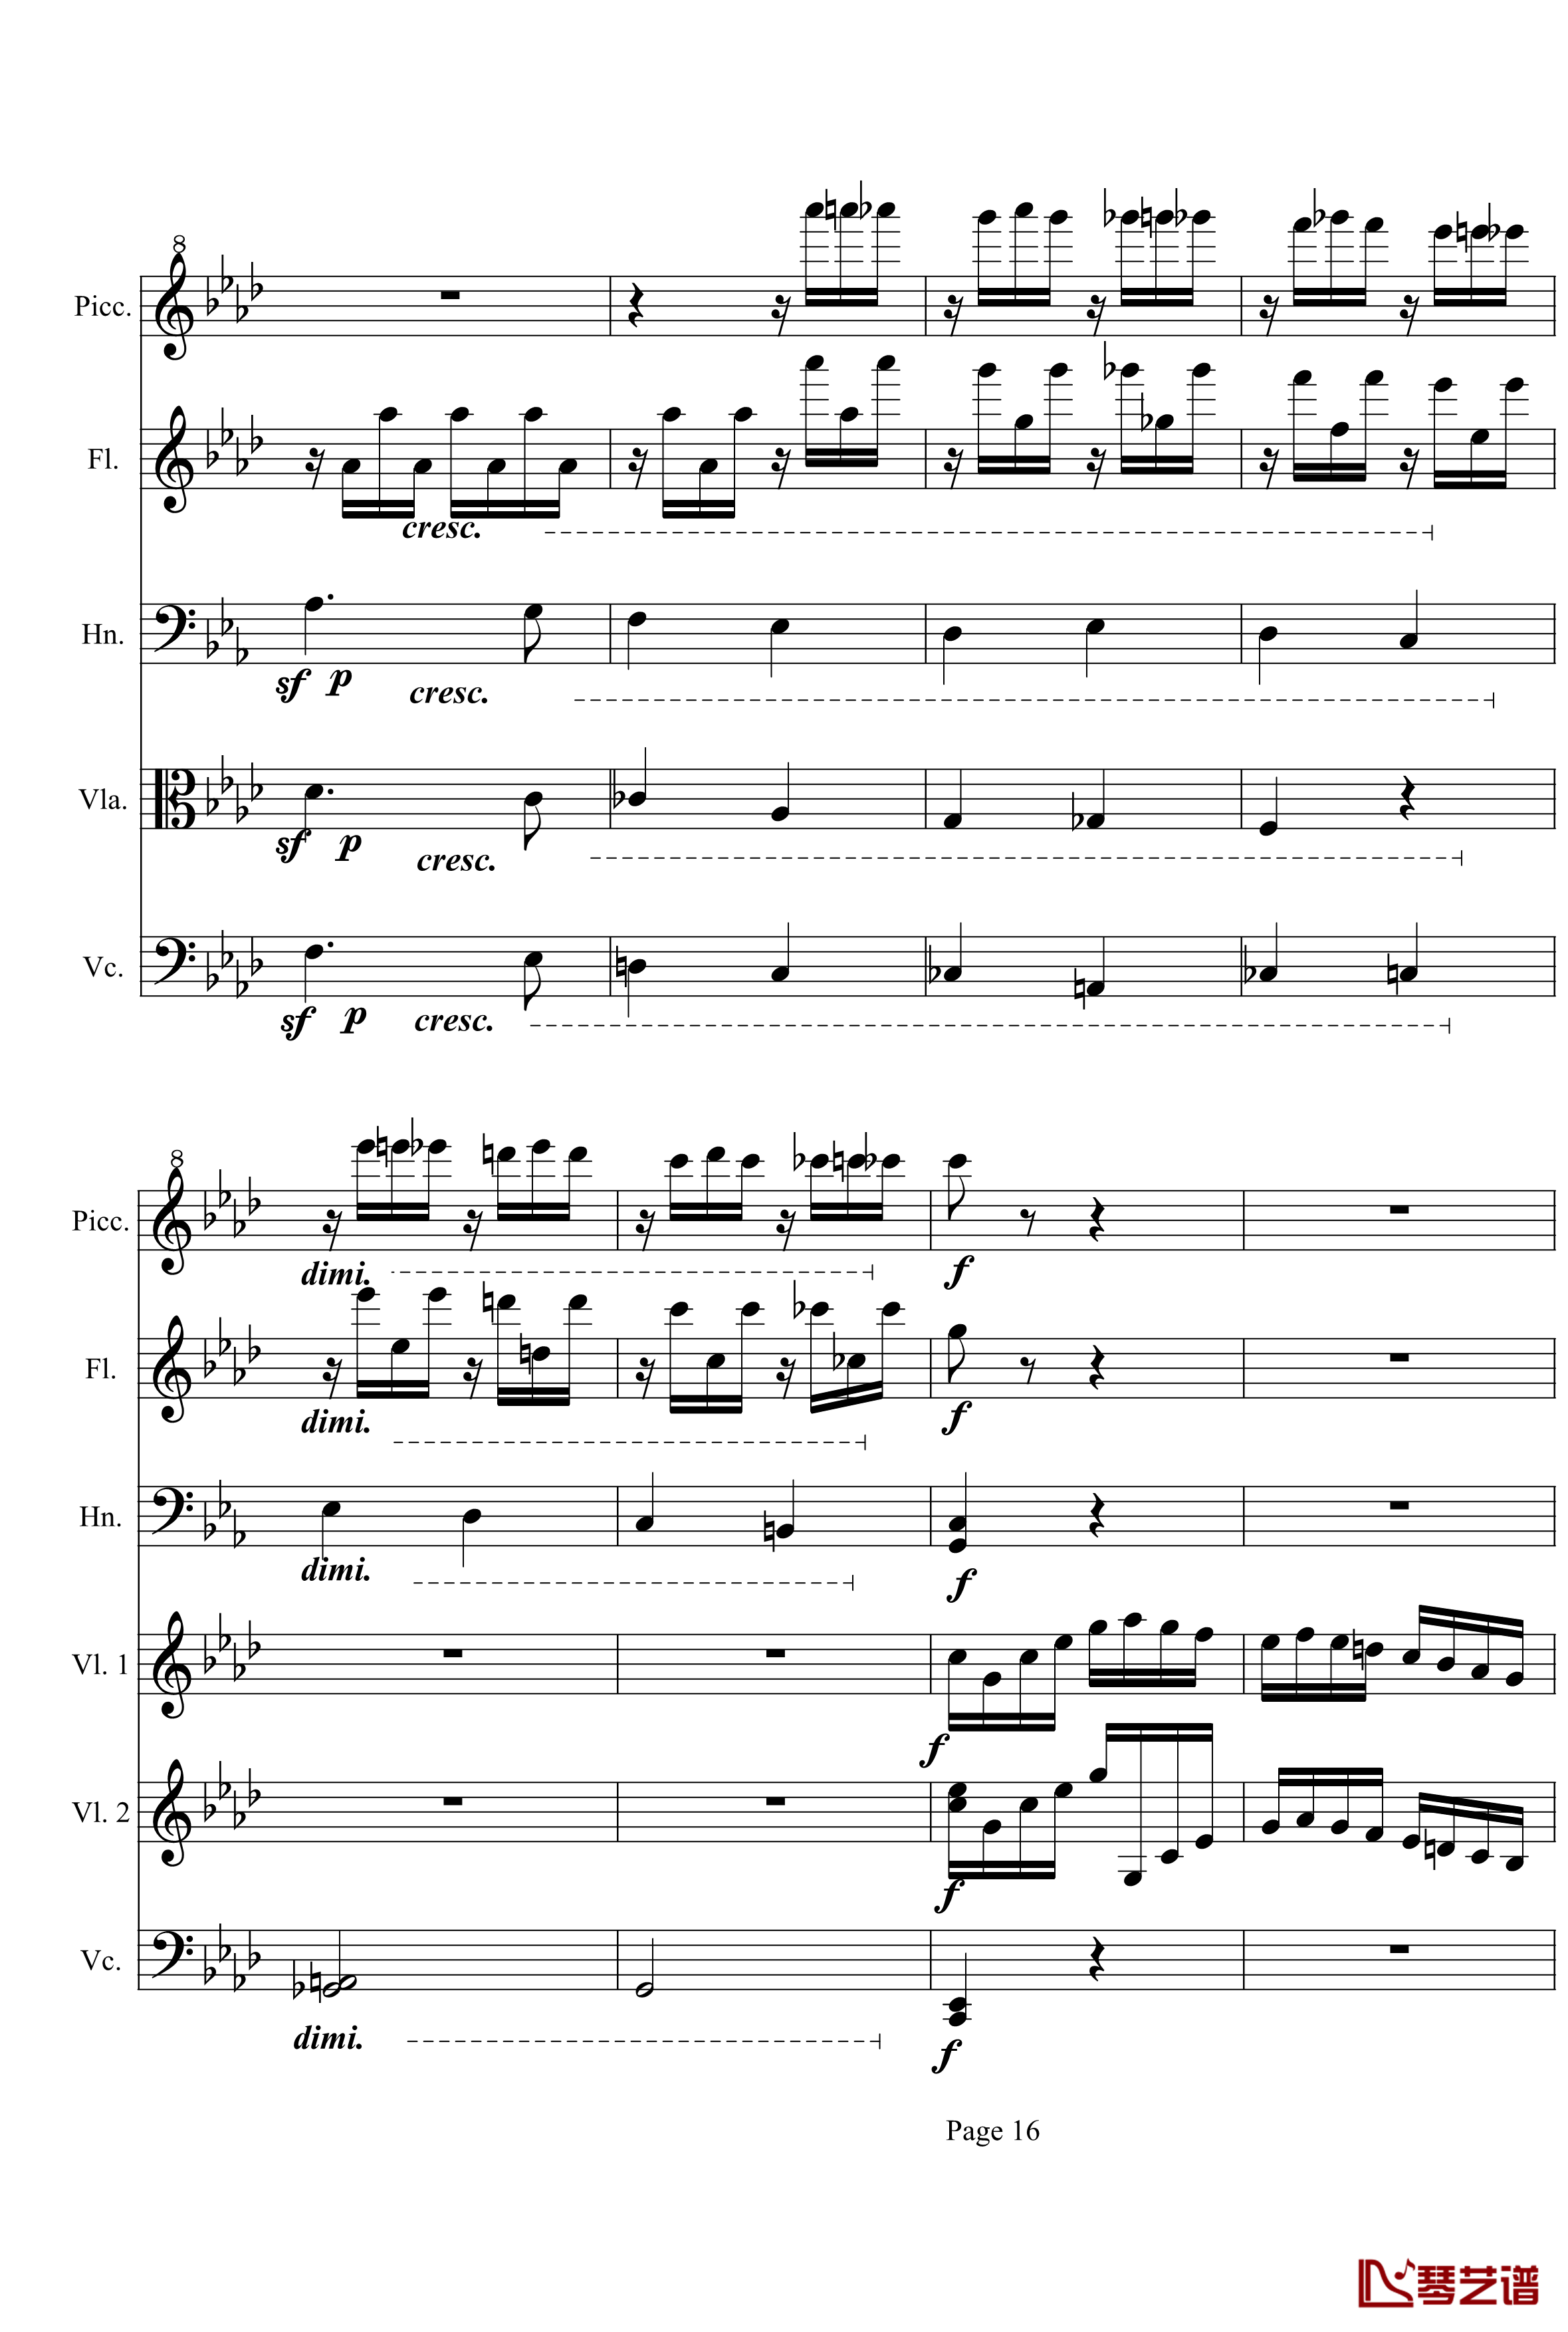 奏鸣曲之交响第23首Ⅲ钢琴谱--贝多芬-beethoven16